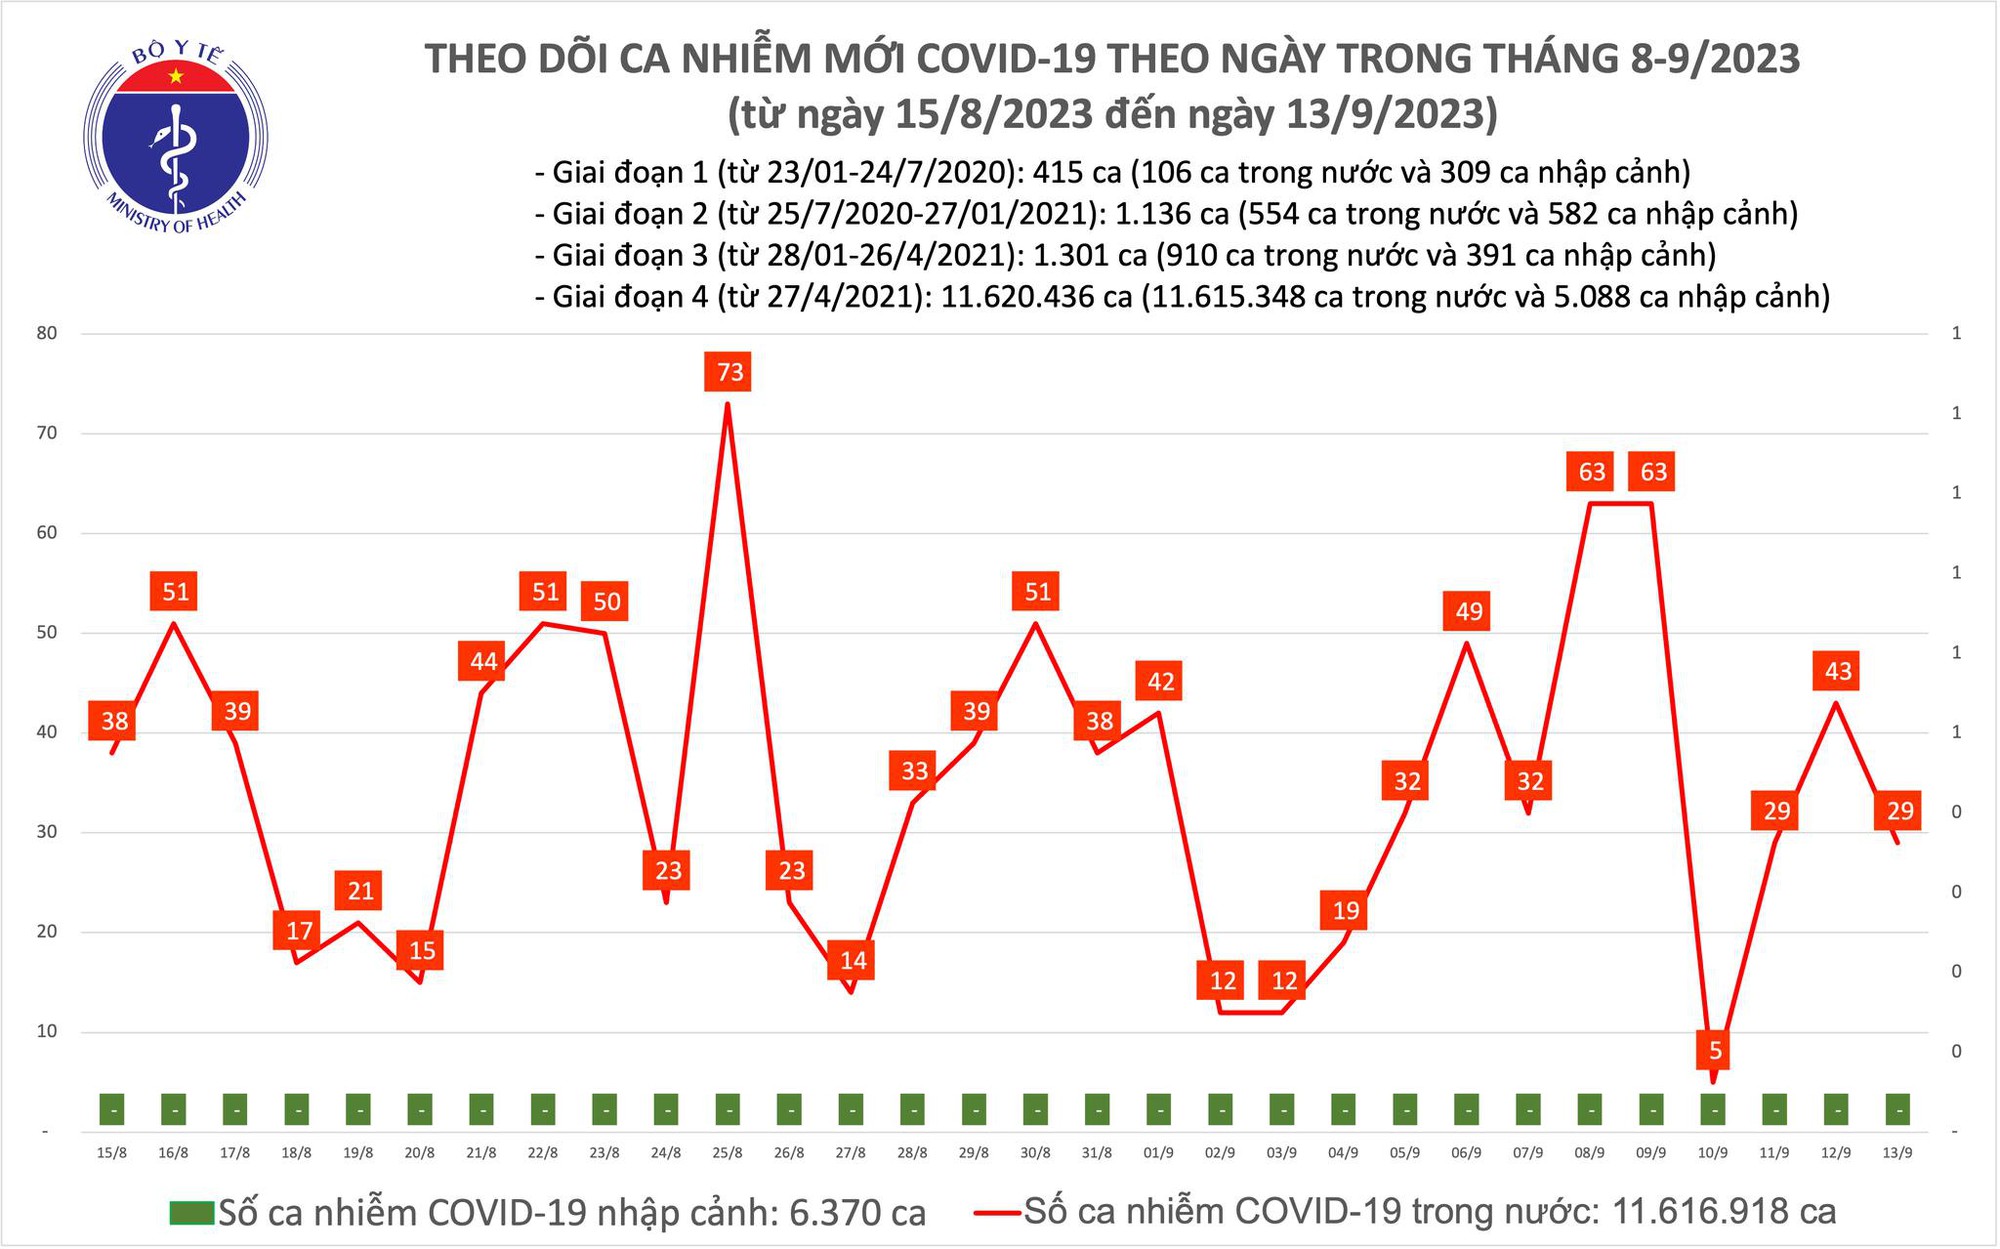 Ngày 13/9: Có 29 ca COVID-19 mới, bệnh nhân thở oxy tăng lên 5 ca - Ảnh 1.